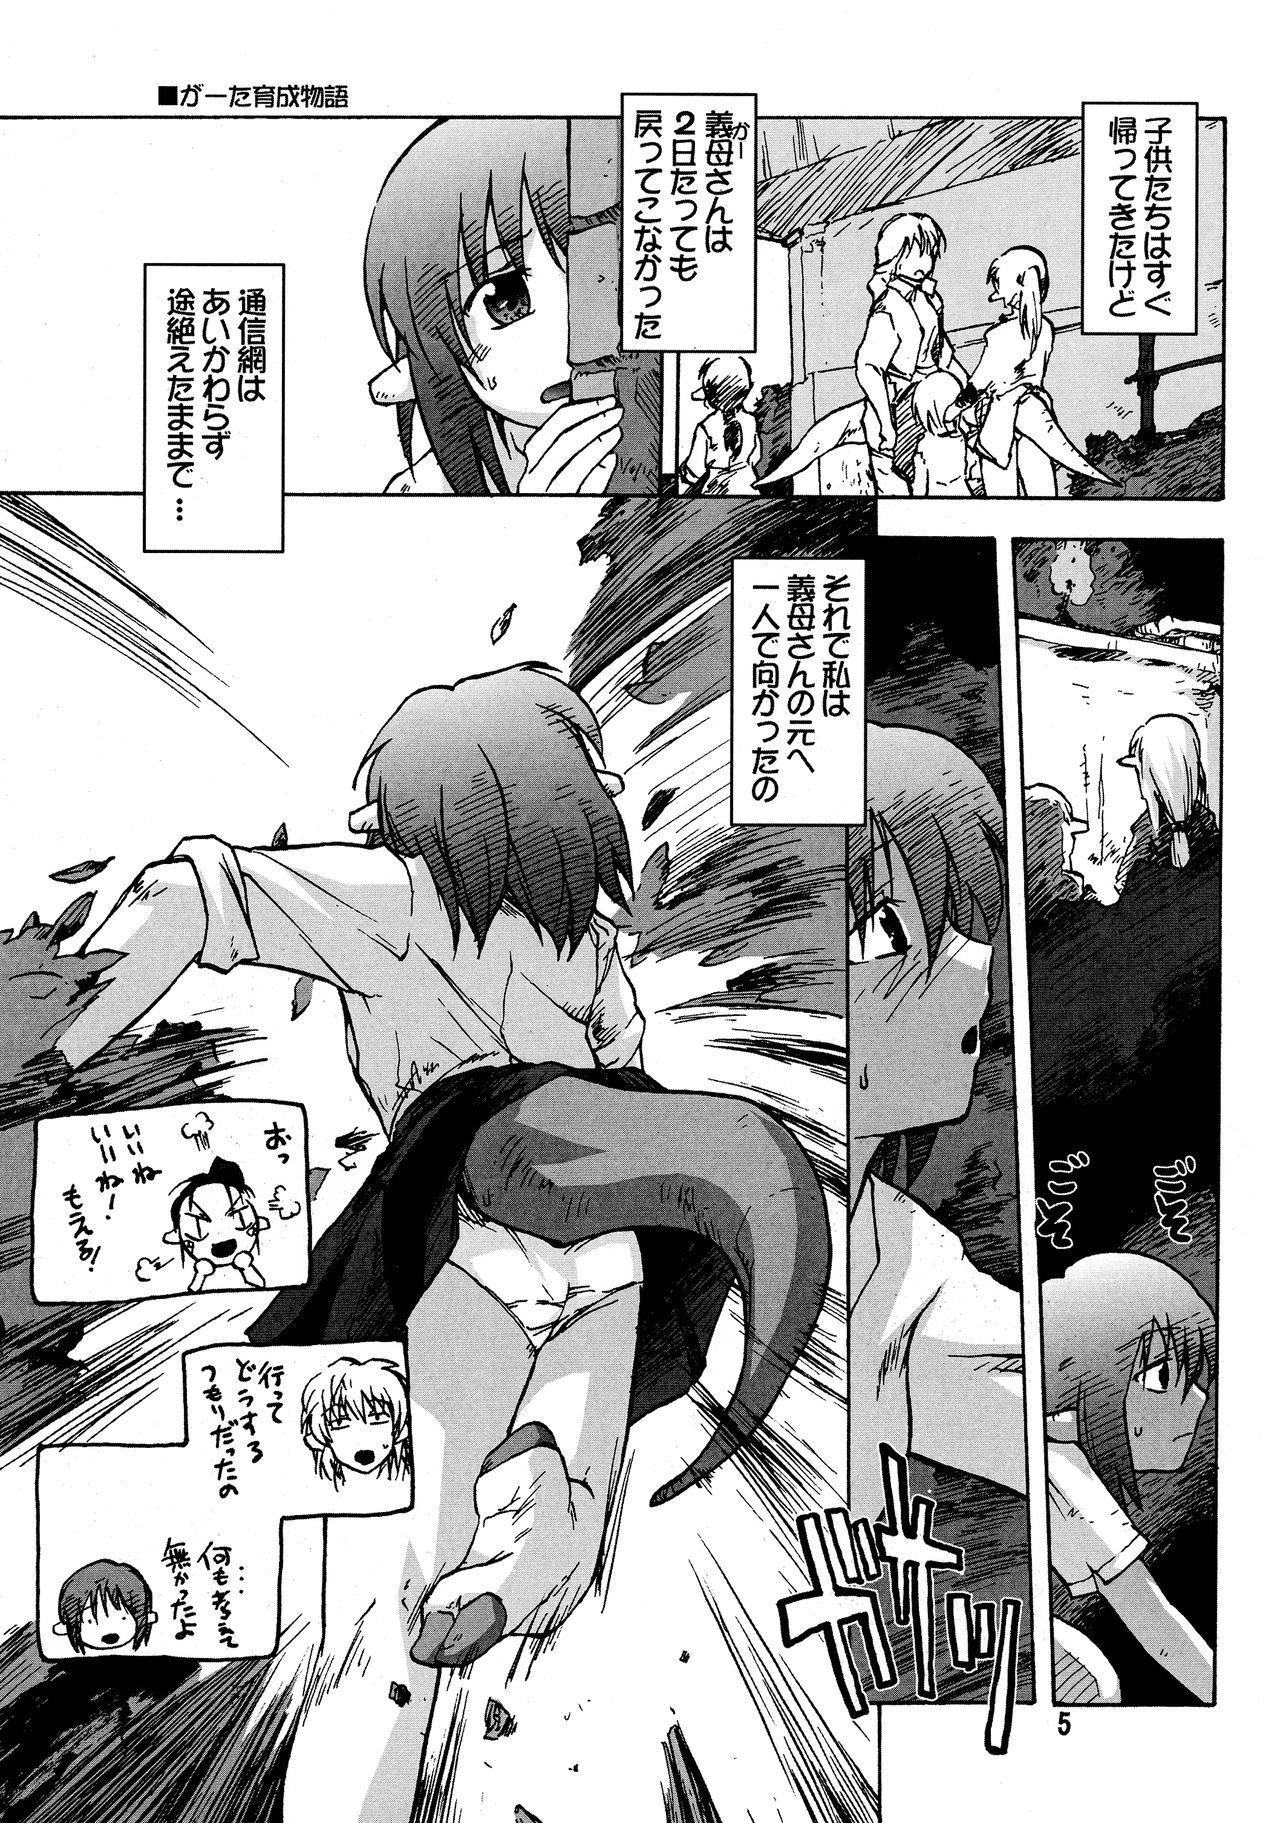 Couple Sex Manga Mintochikuwa vol. 3 Free Rough Sex Porn - Page 5